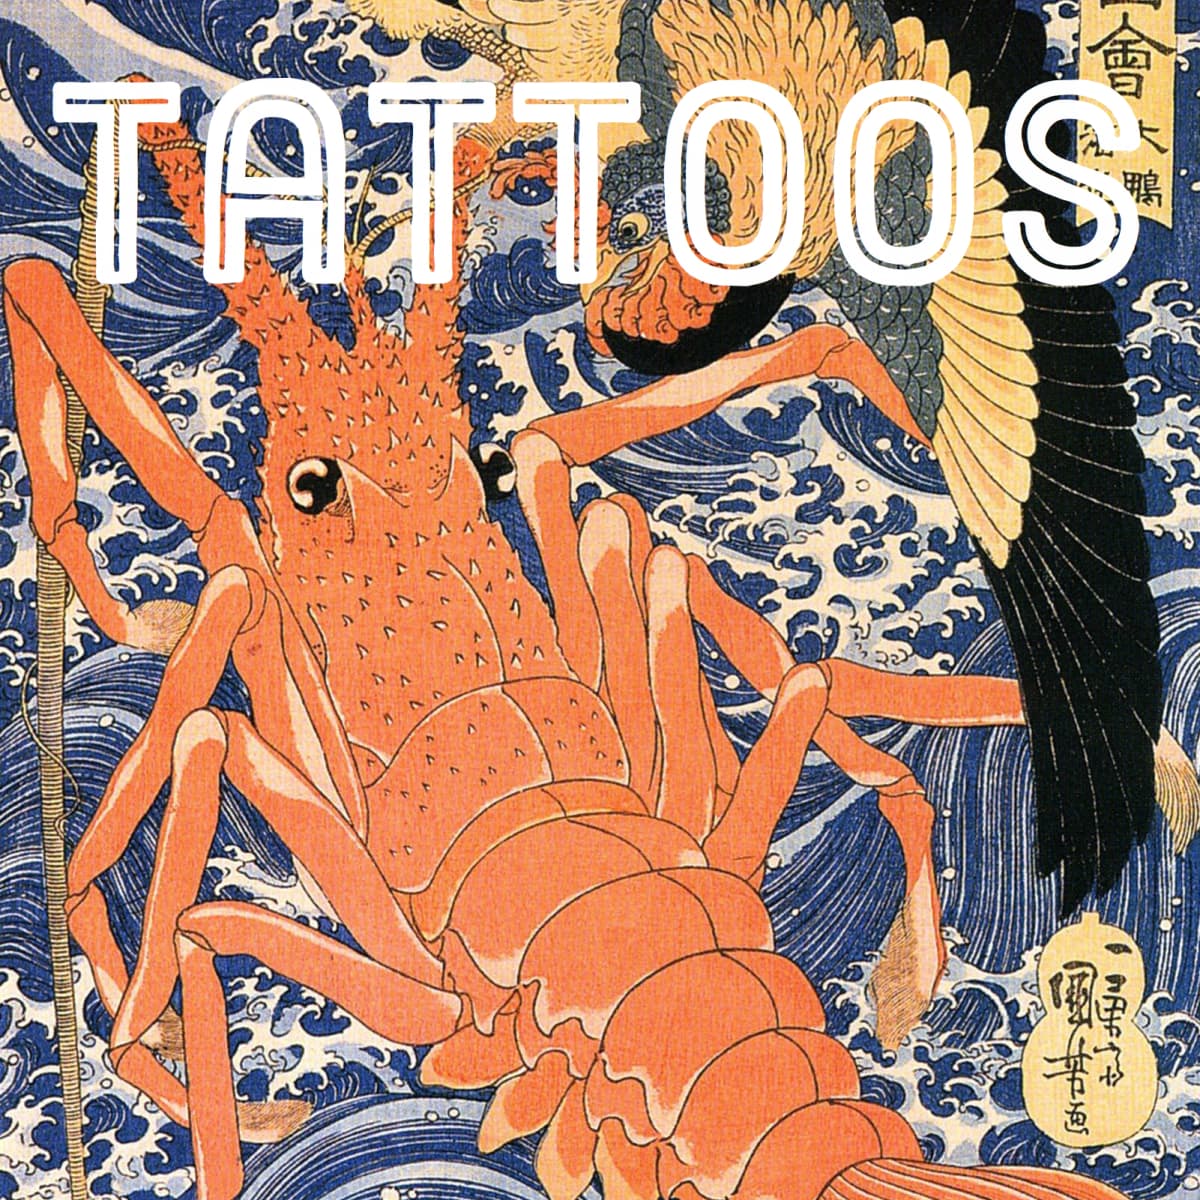 Lobster tattoo   by Giorkos mikisraftis     tattoo tattoos ink  inked tatts tattrx tattooartist tattooart tattrxsubmission  illustrationtattoodesign traditional traditionaltattoo  traditionaltattoodesign dragon dragontattoo 